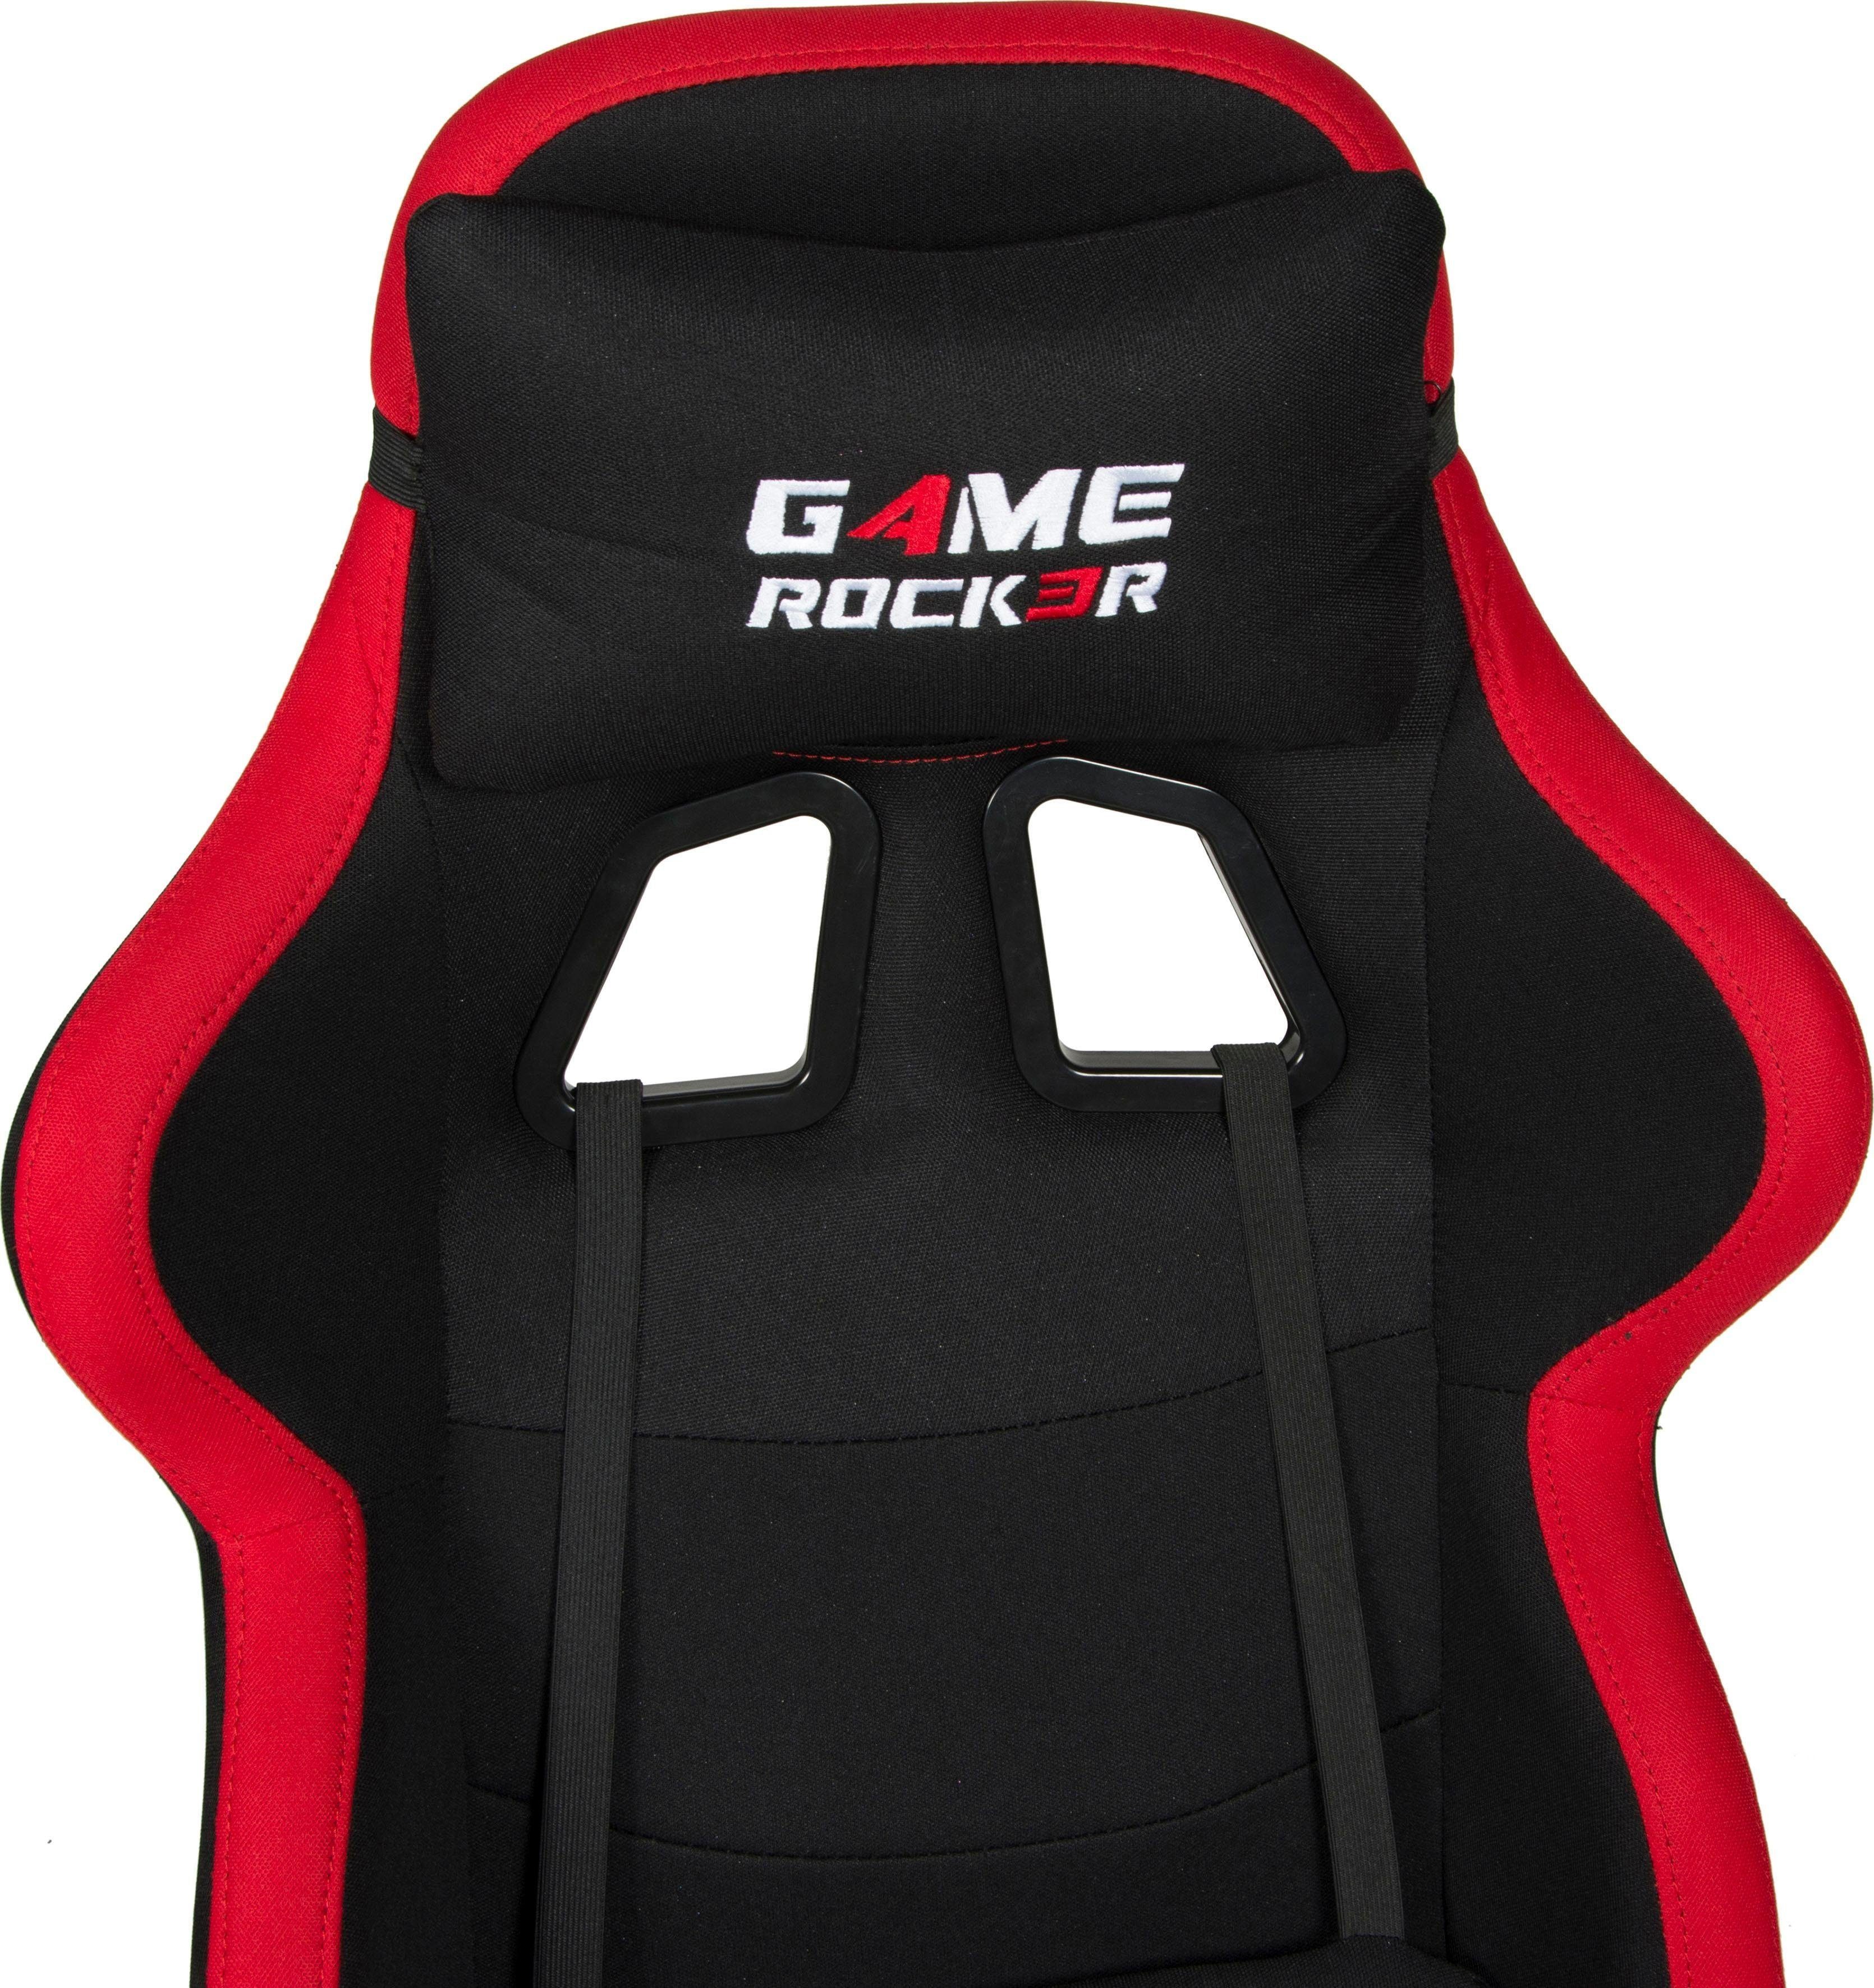 Game-Rocker schwarz/rot G-10 Gaming-Stuhl schwarz/rot | Collection Duo schwarz/rot |